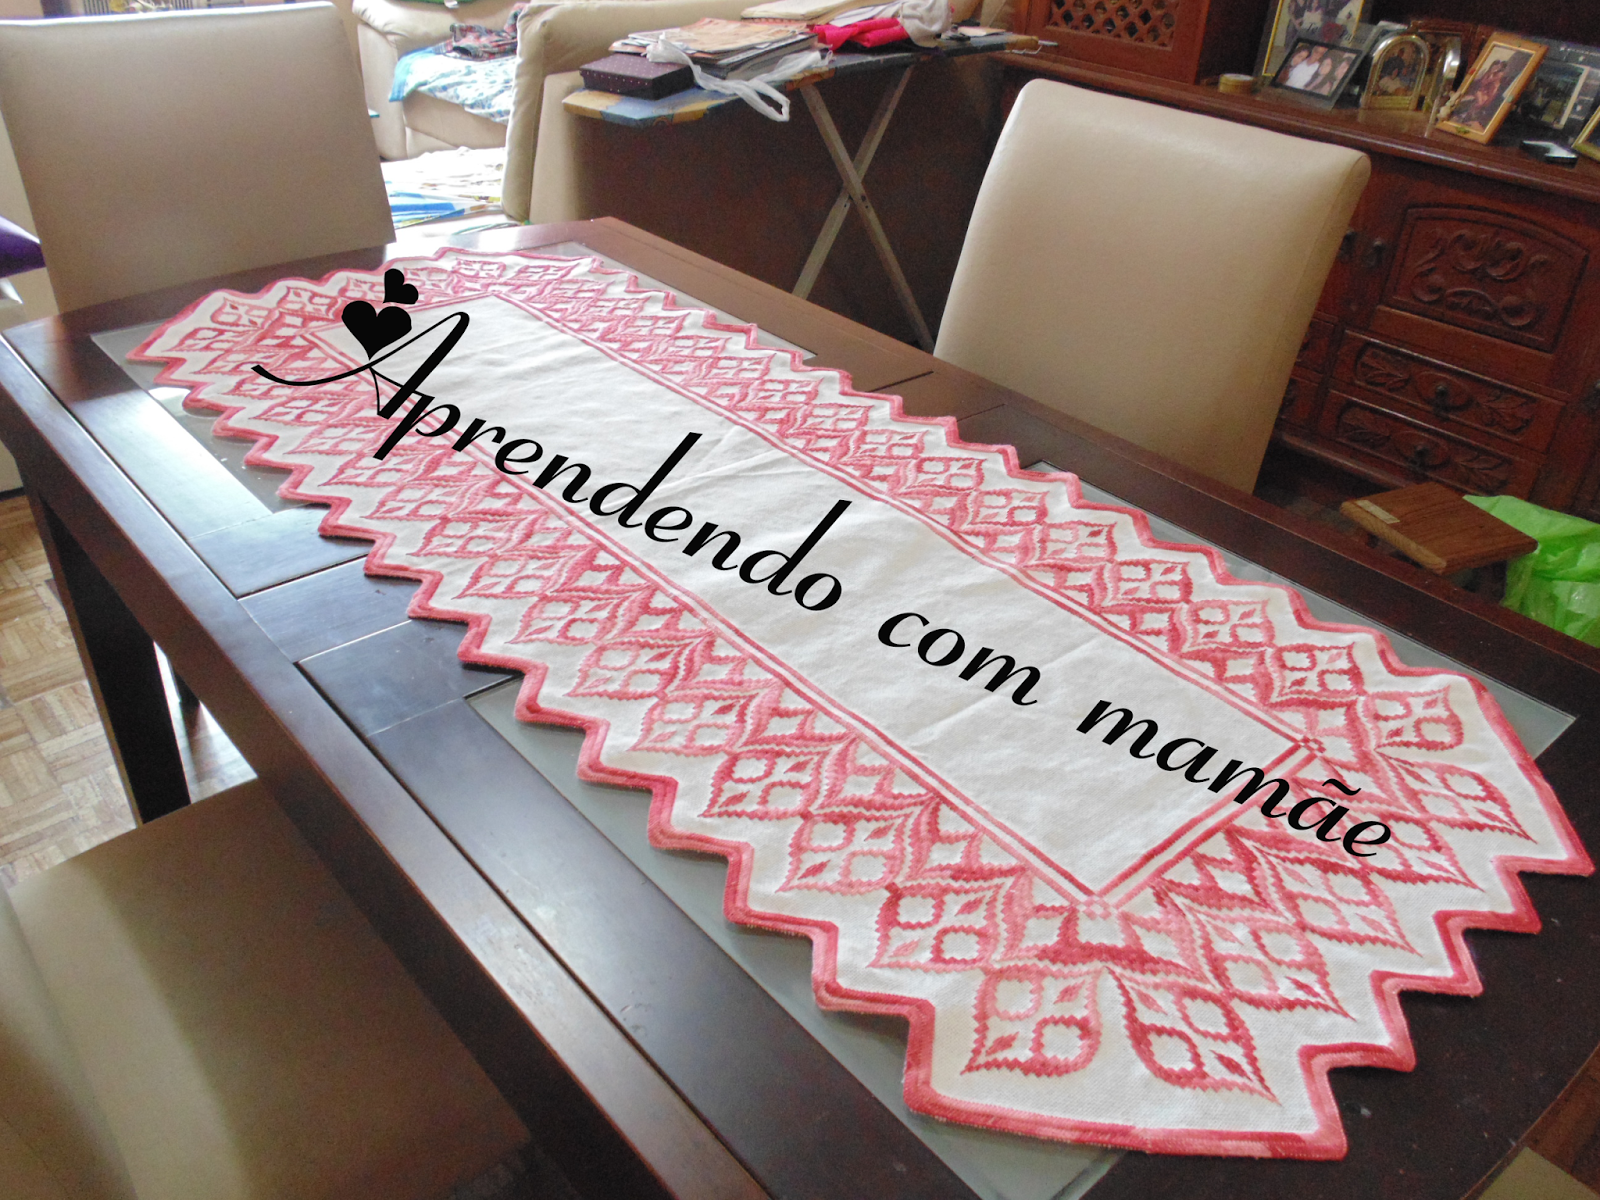 Aprendendo com mamãe: Centro de mesa bordado em tecido xadrez